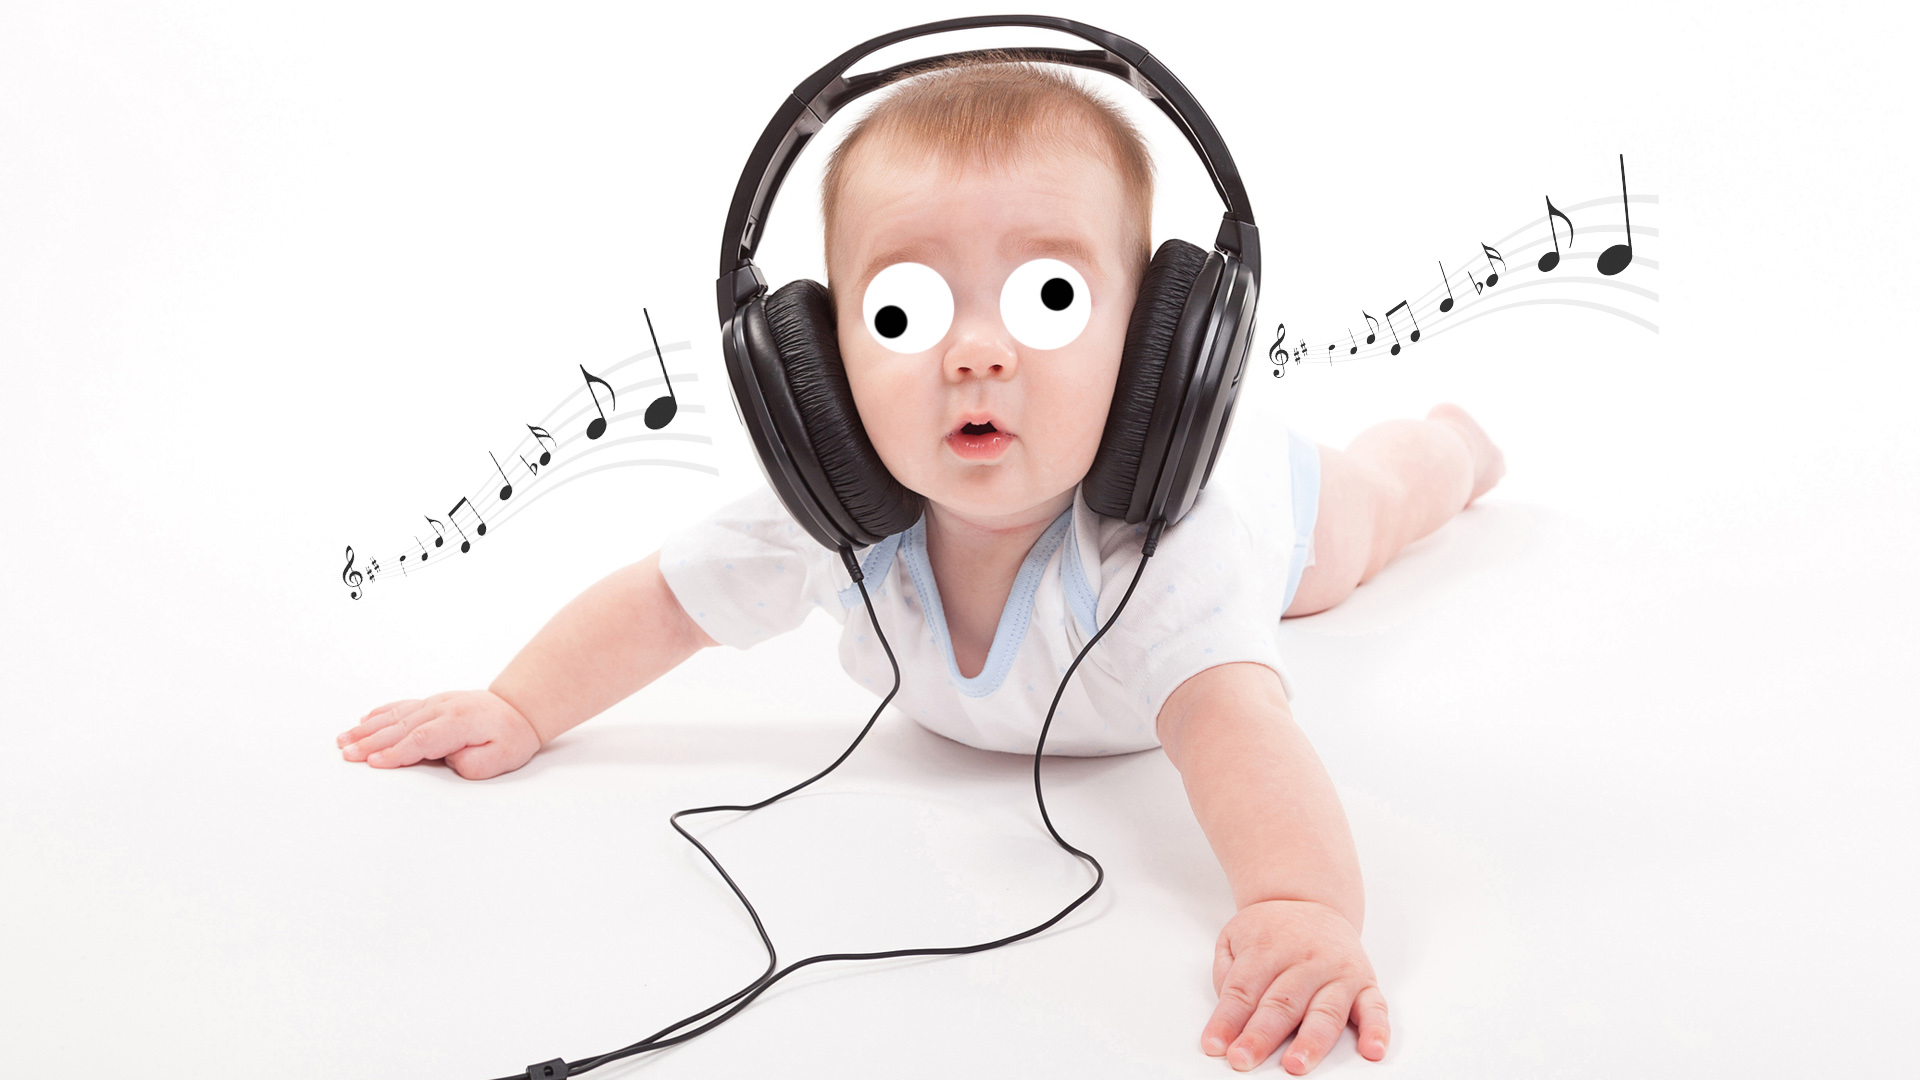 A baby wearing headphones